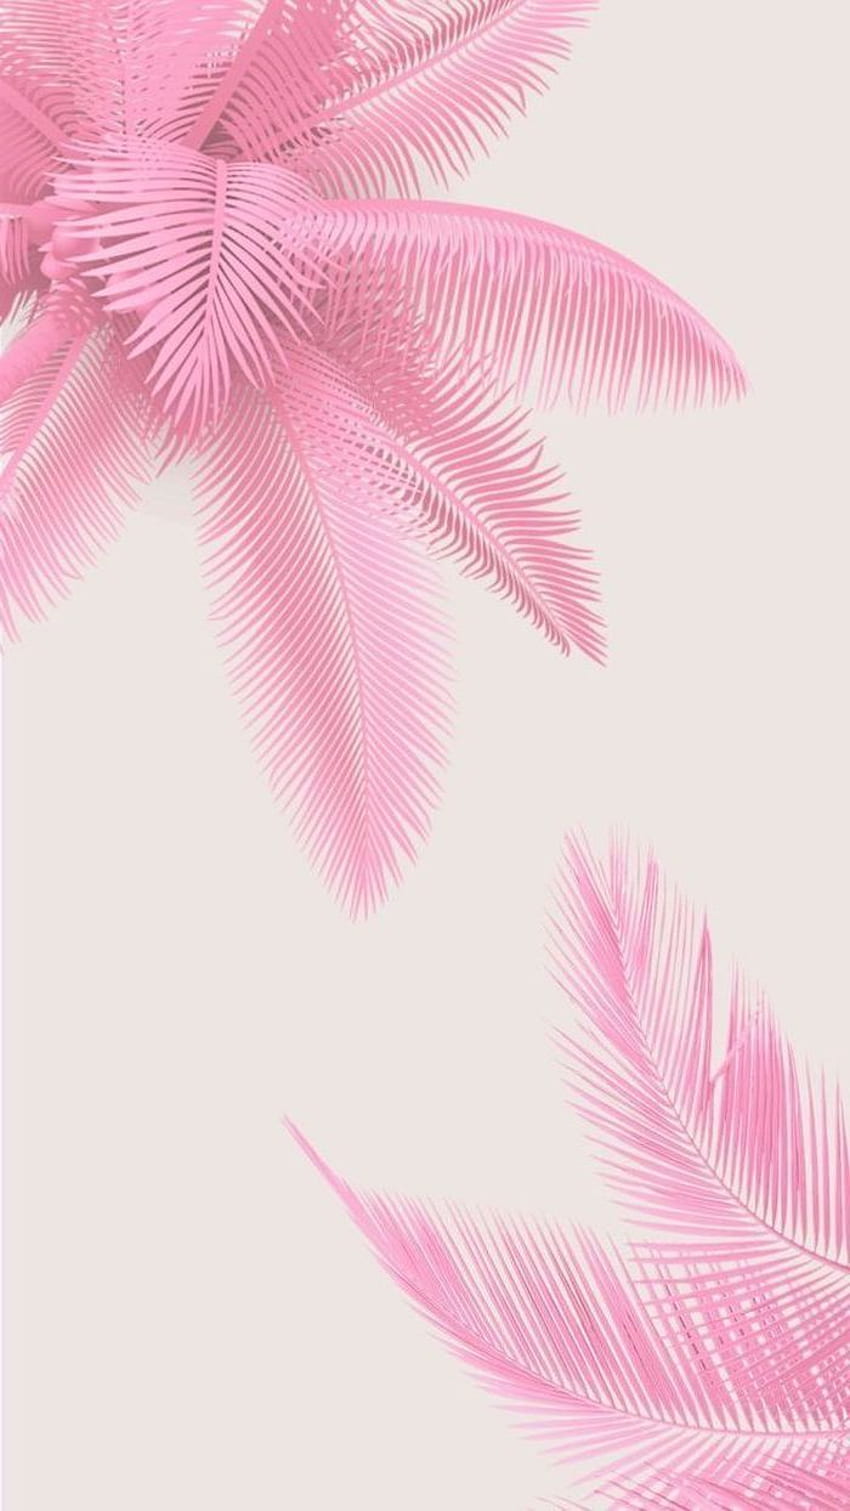 Hãy chạm đến thiên nhiên và tận hưởng cái mát của lá cọ với hình nền Iphone màu hồng tươi sáng. Không chỉ khiến cho bạn cảm thấy thư giãn mà còn giúp truyền tải sắc màu thân thiện và vui tươi.